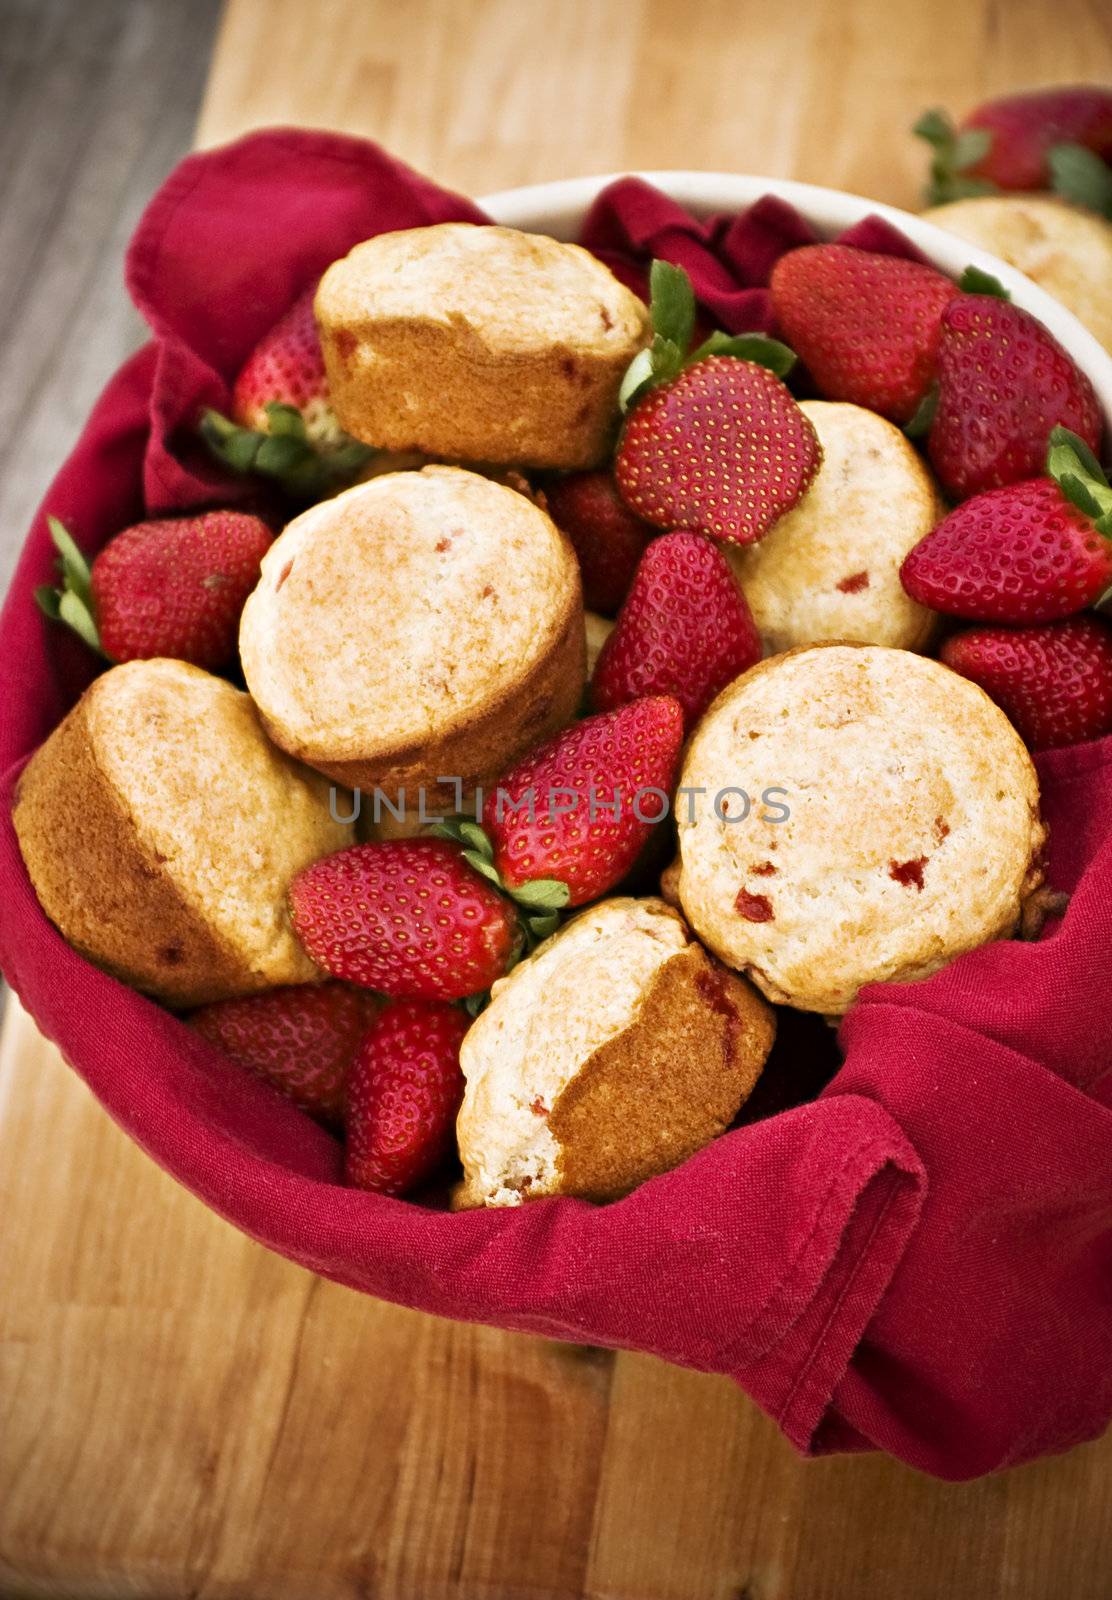 Fresh strawberry muffins with fresh strawberries

